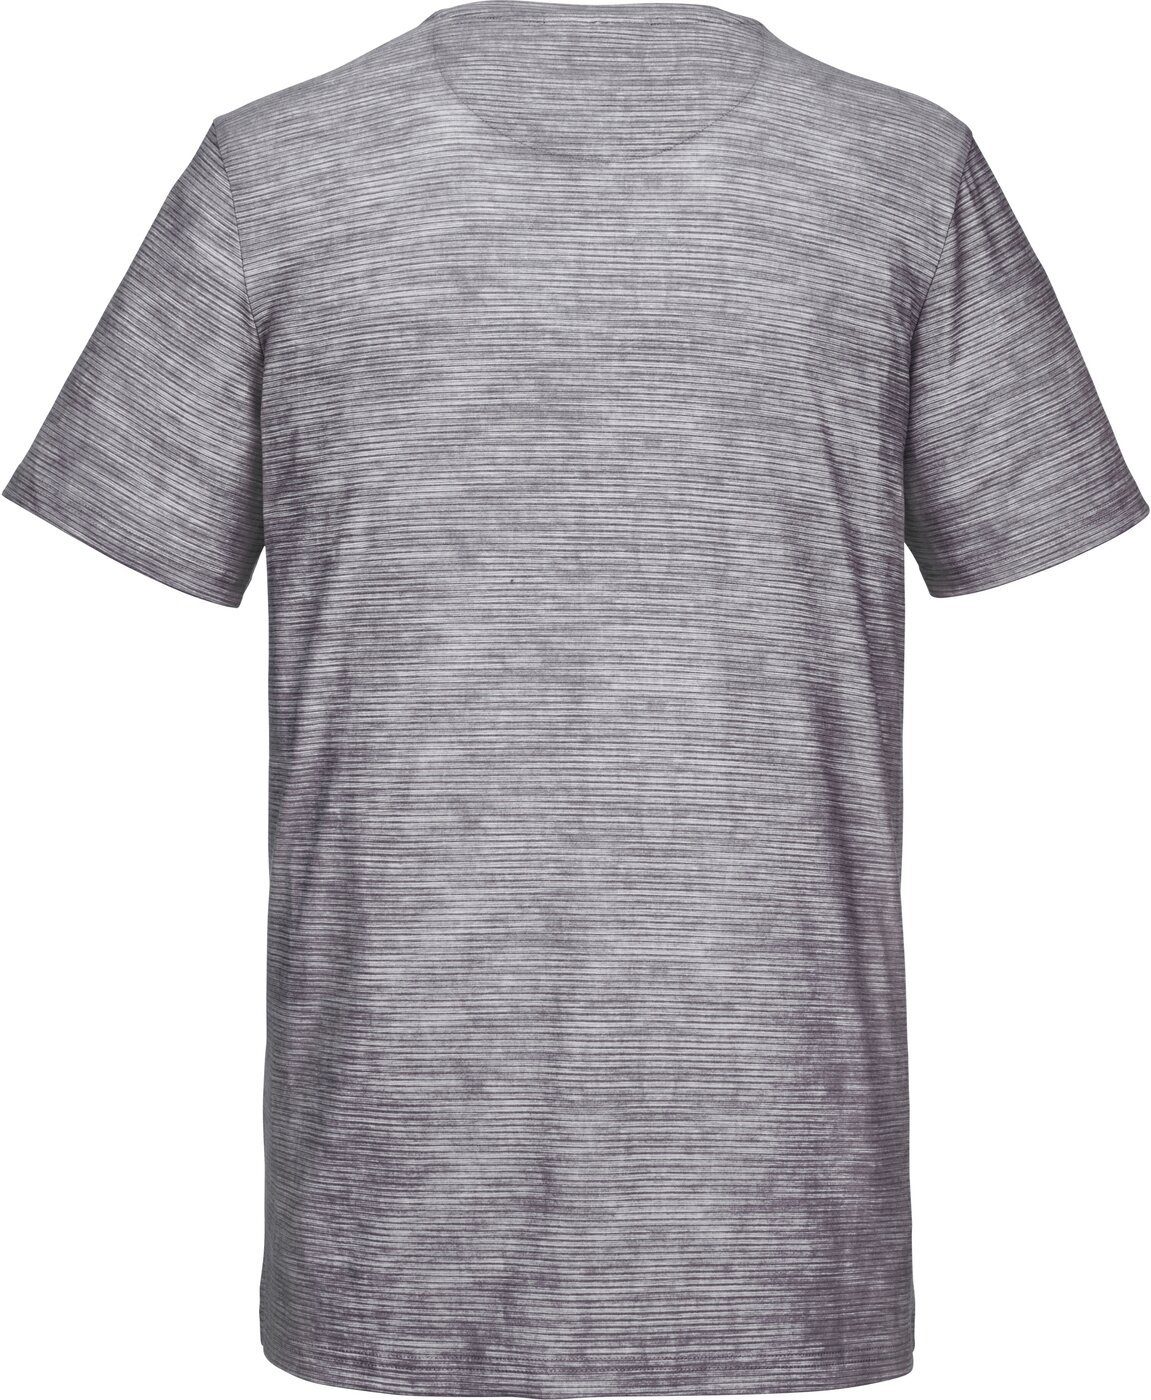 DX DX T-Shirt Optik Melange G.I.G.A. T-Shirt G.I.G.A. in Herren gestreifter